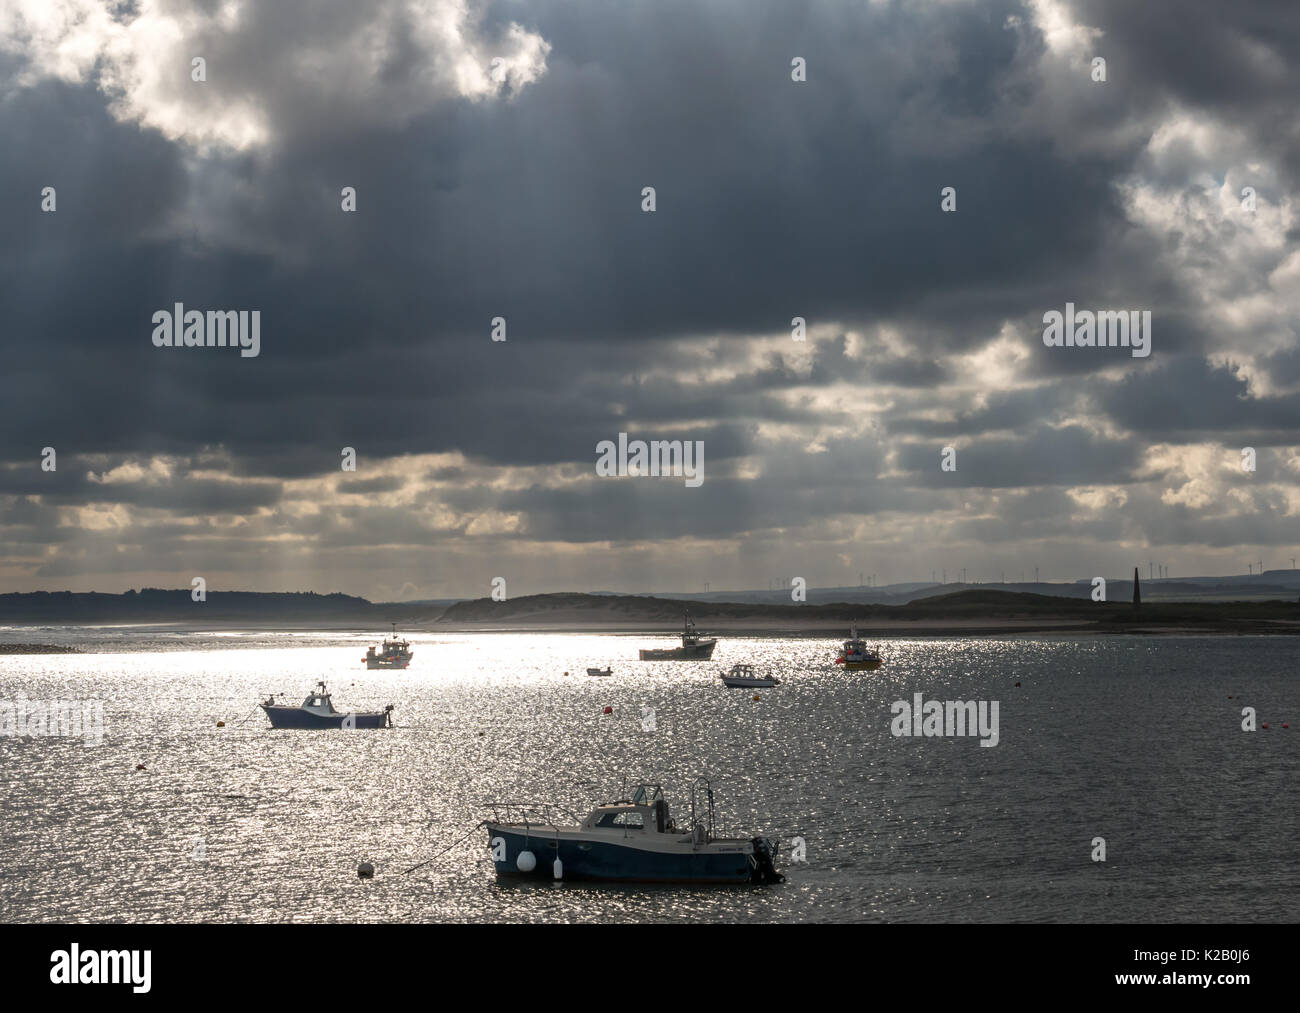 Vista dall Isola Santa Lindisfarne di Northumberland coast con barche ormeggiate nel pool di gallina e drammatici raggi del sole lo streaming attraverso le nuvole, England, Regno Unito Foto Stock